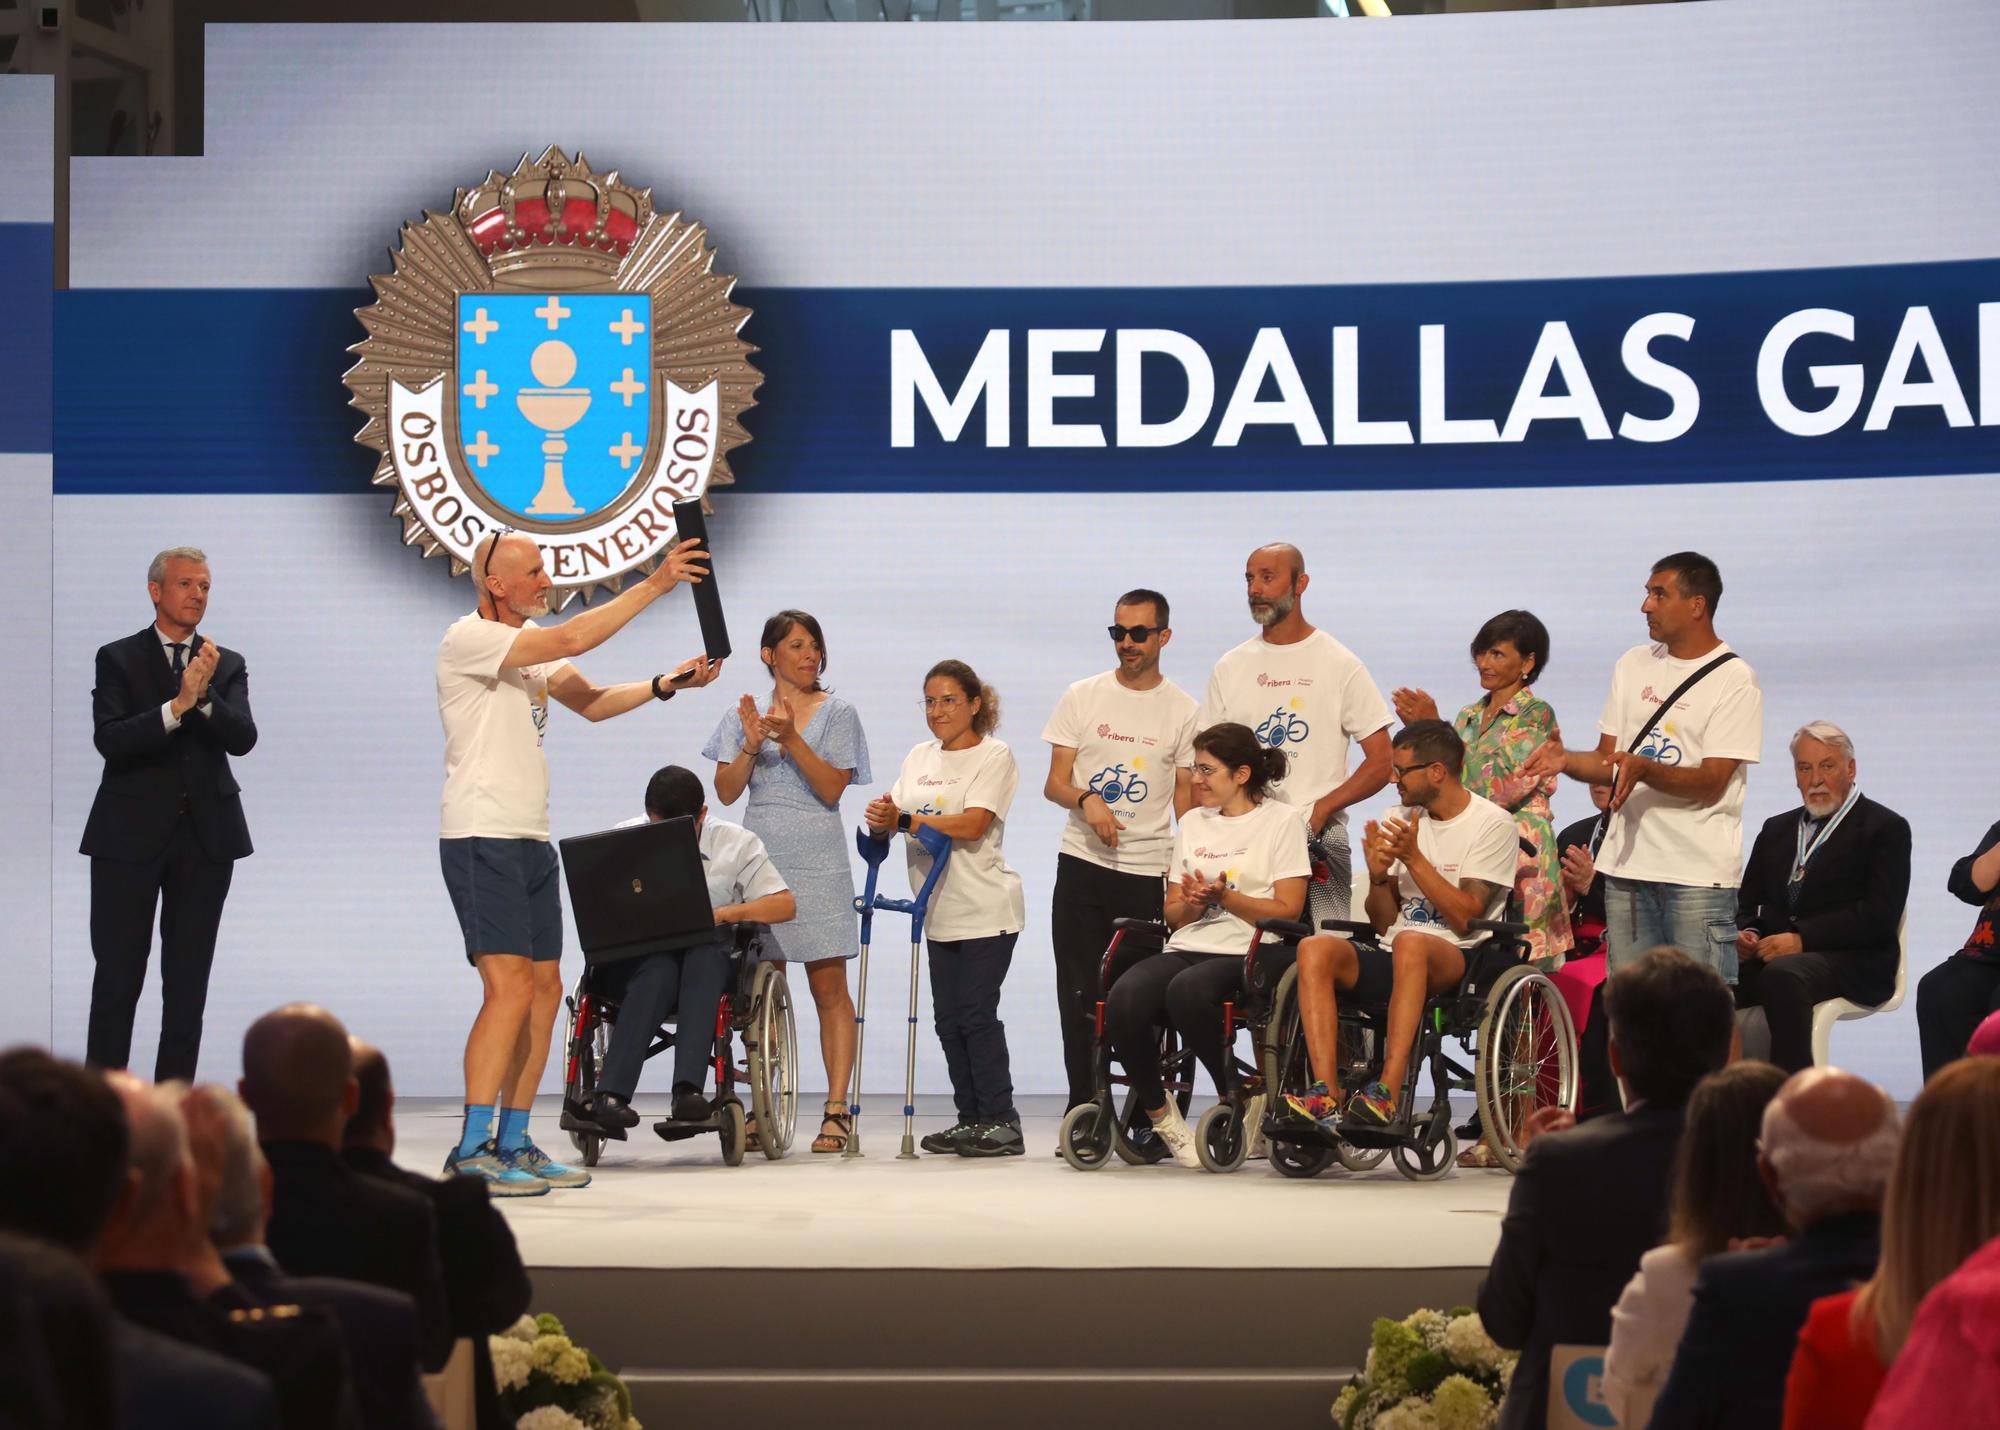 Acto de entrega de las Medallas de Galicia 2022